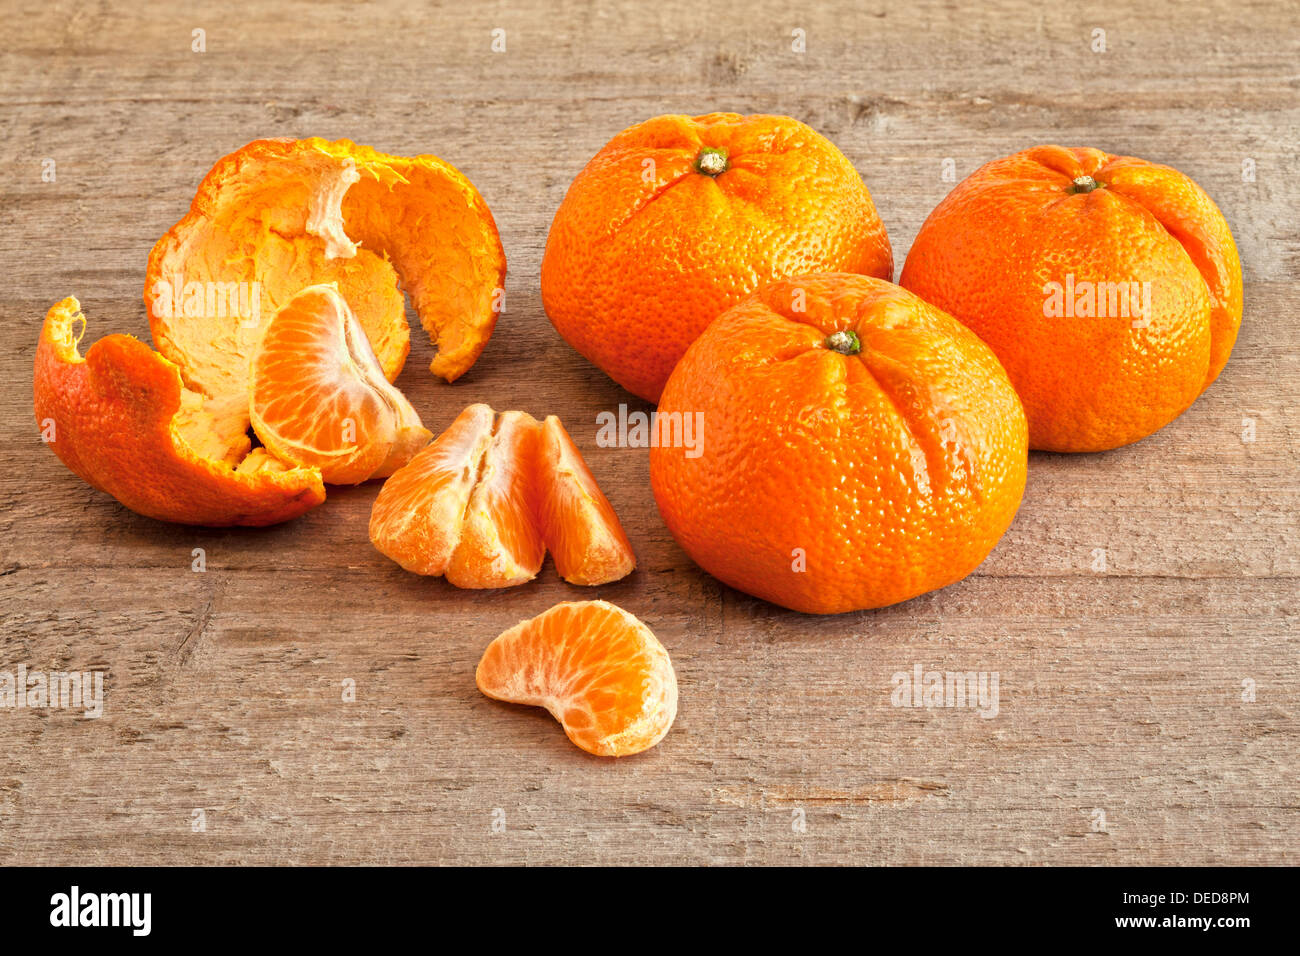 Mandarini Arance - Mandarini arance su un rustico di una superficie di legno, tre interi, uno pelato e segmentati. Foto Stock